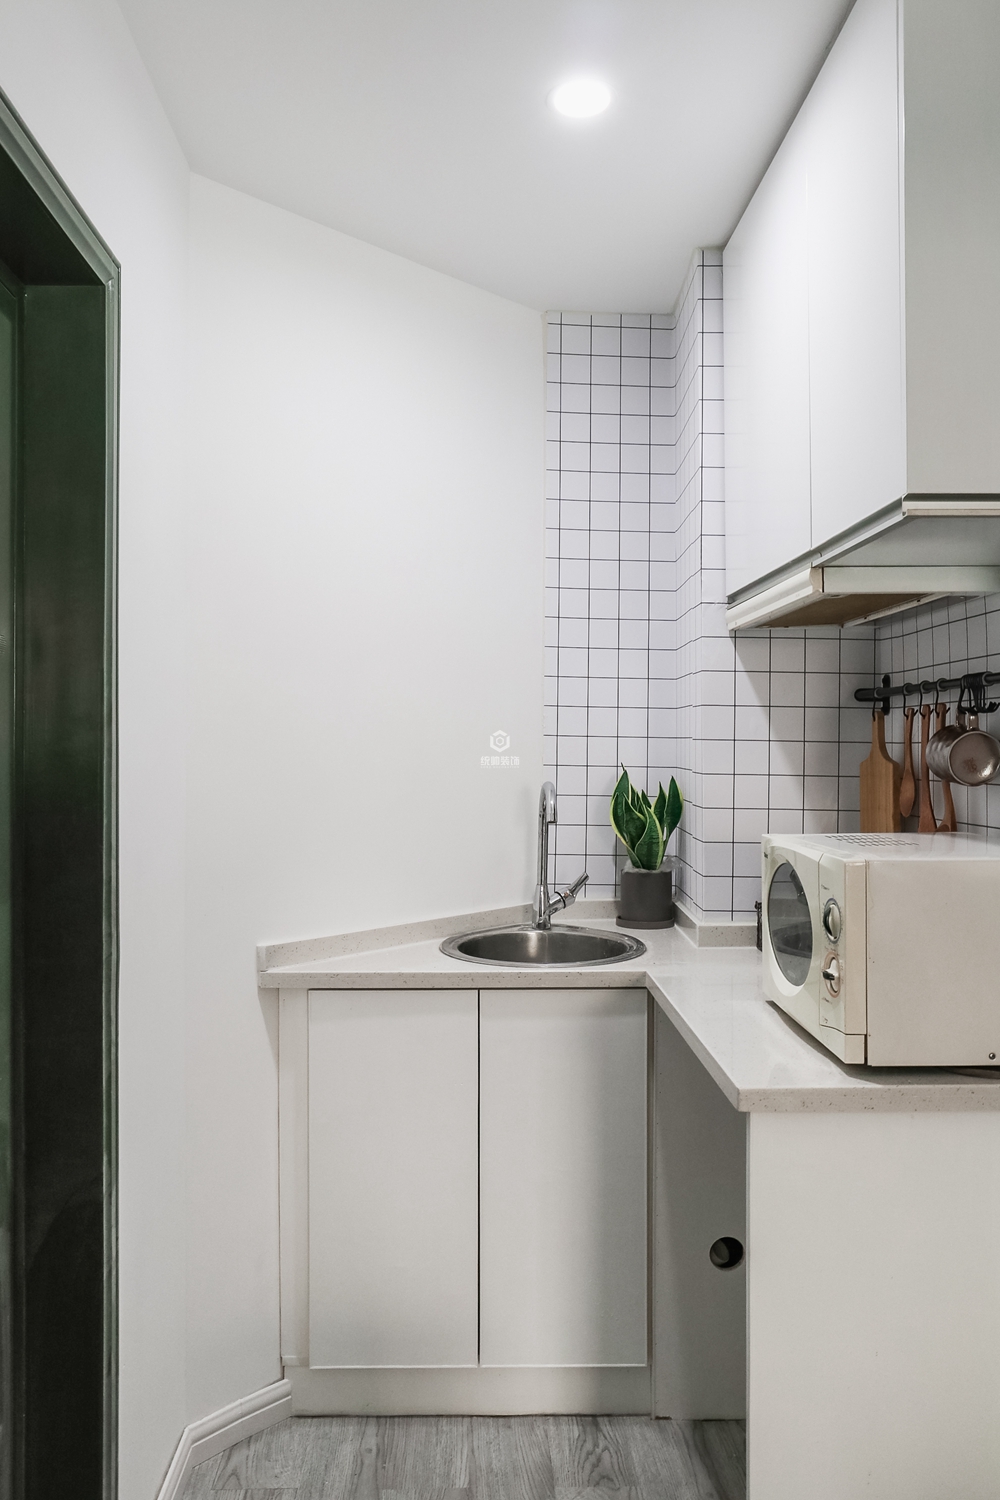 普陀区君临国际72平方北欧风格厨房装修效果图